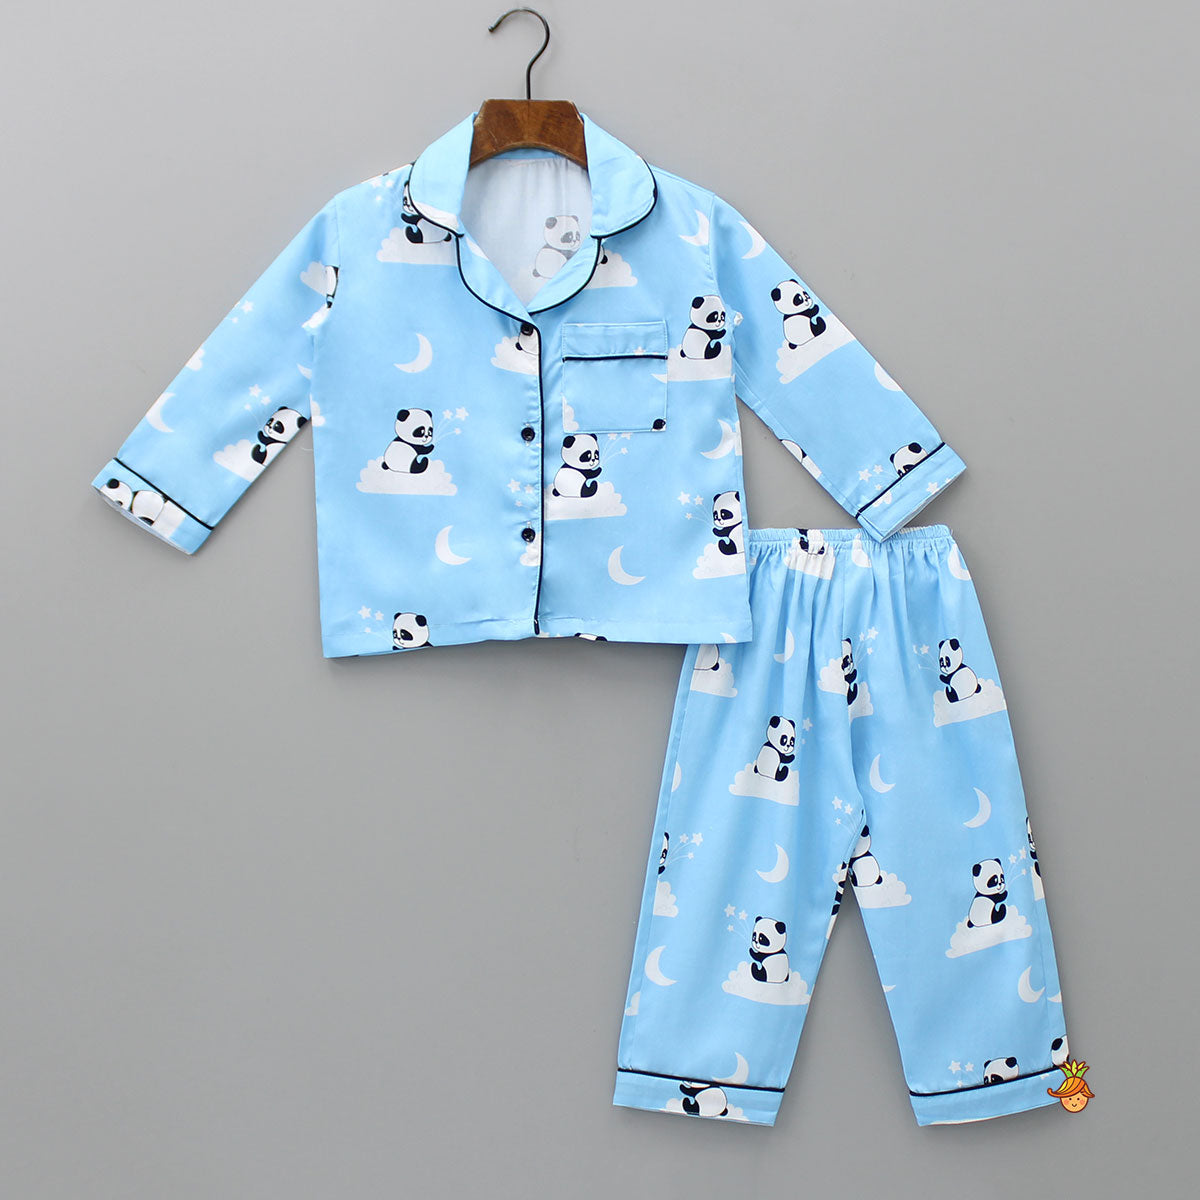 Cute Panda Printed Sleepwear